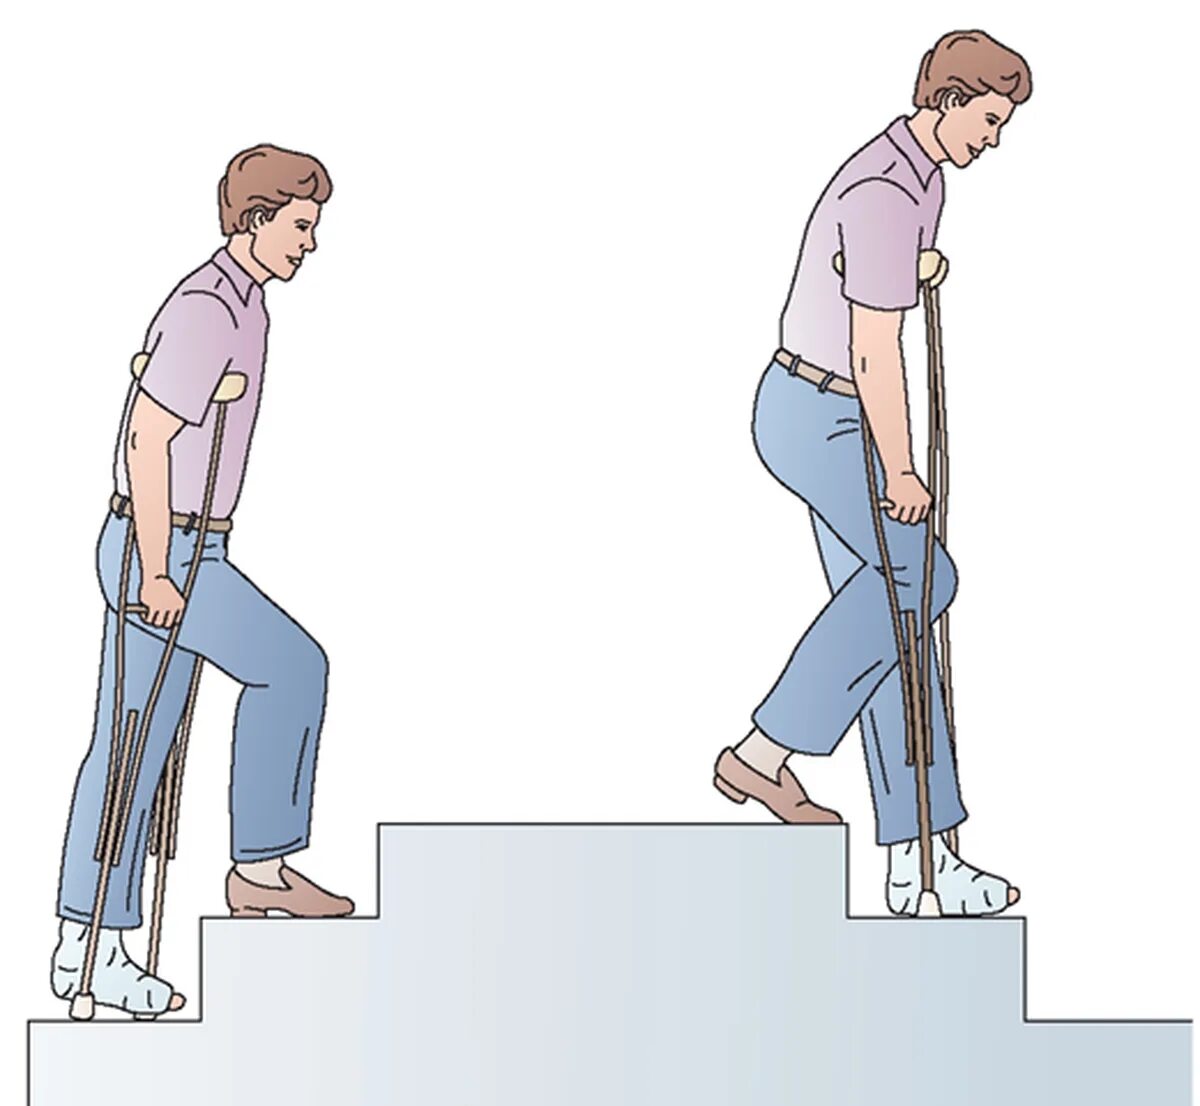 Подниматься спускаться по лестнице. Костыли после эндопротезирования коленного сустава. Ходьба на костылях. Ходьба на костылях по ступенькам. Подъем и спуск по лестнице на костылях.